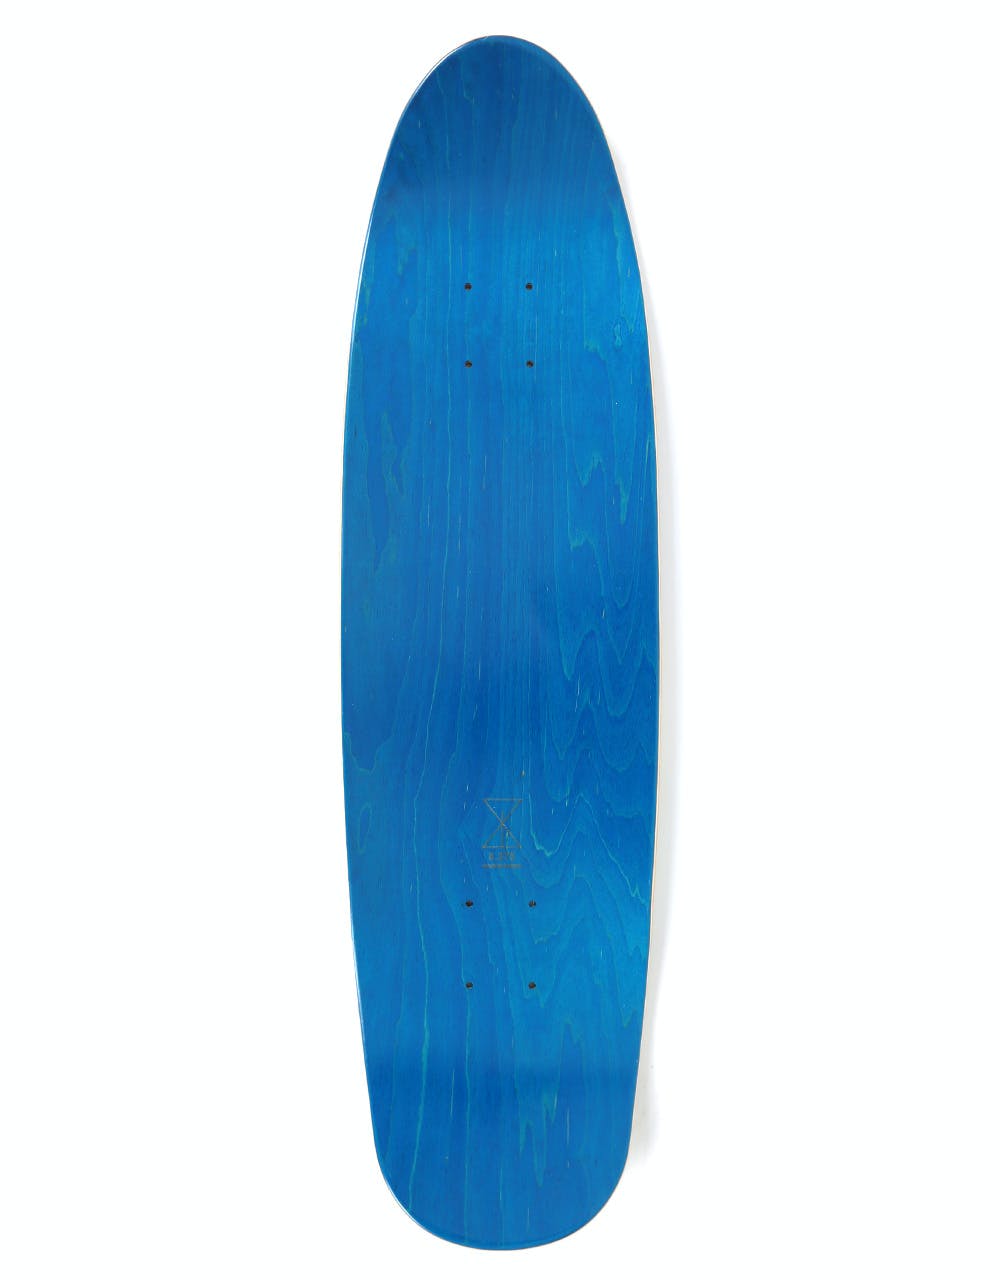 Sour Loop Man Skateboard Deck - 8.375"